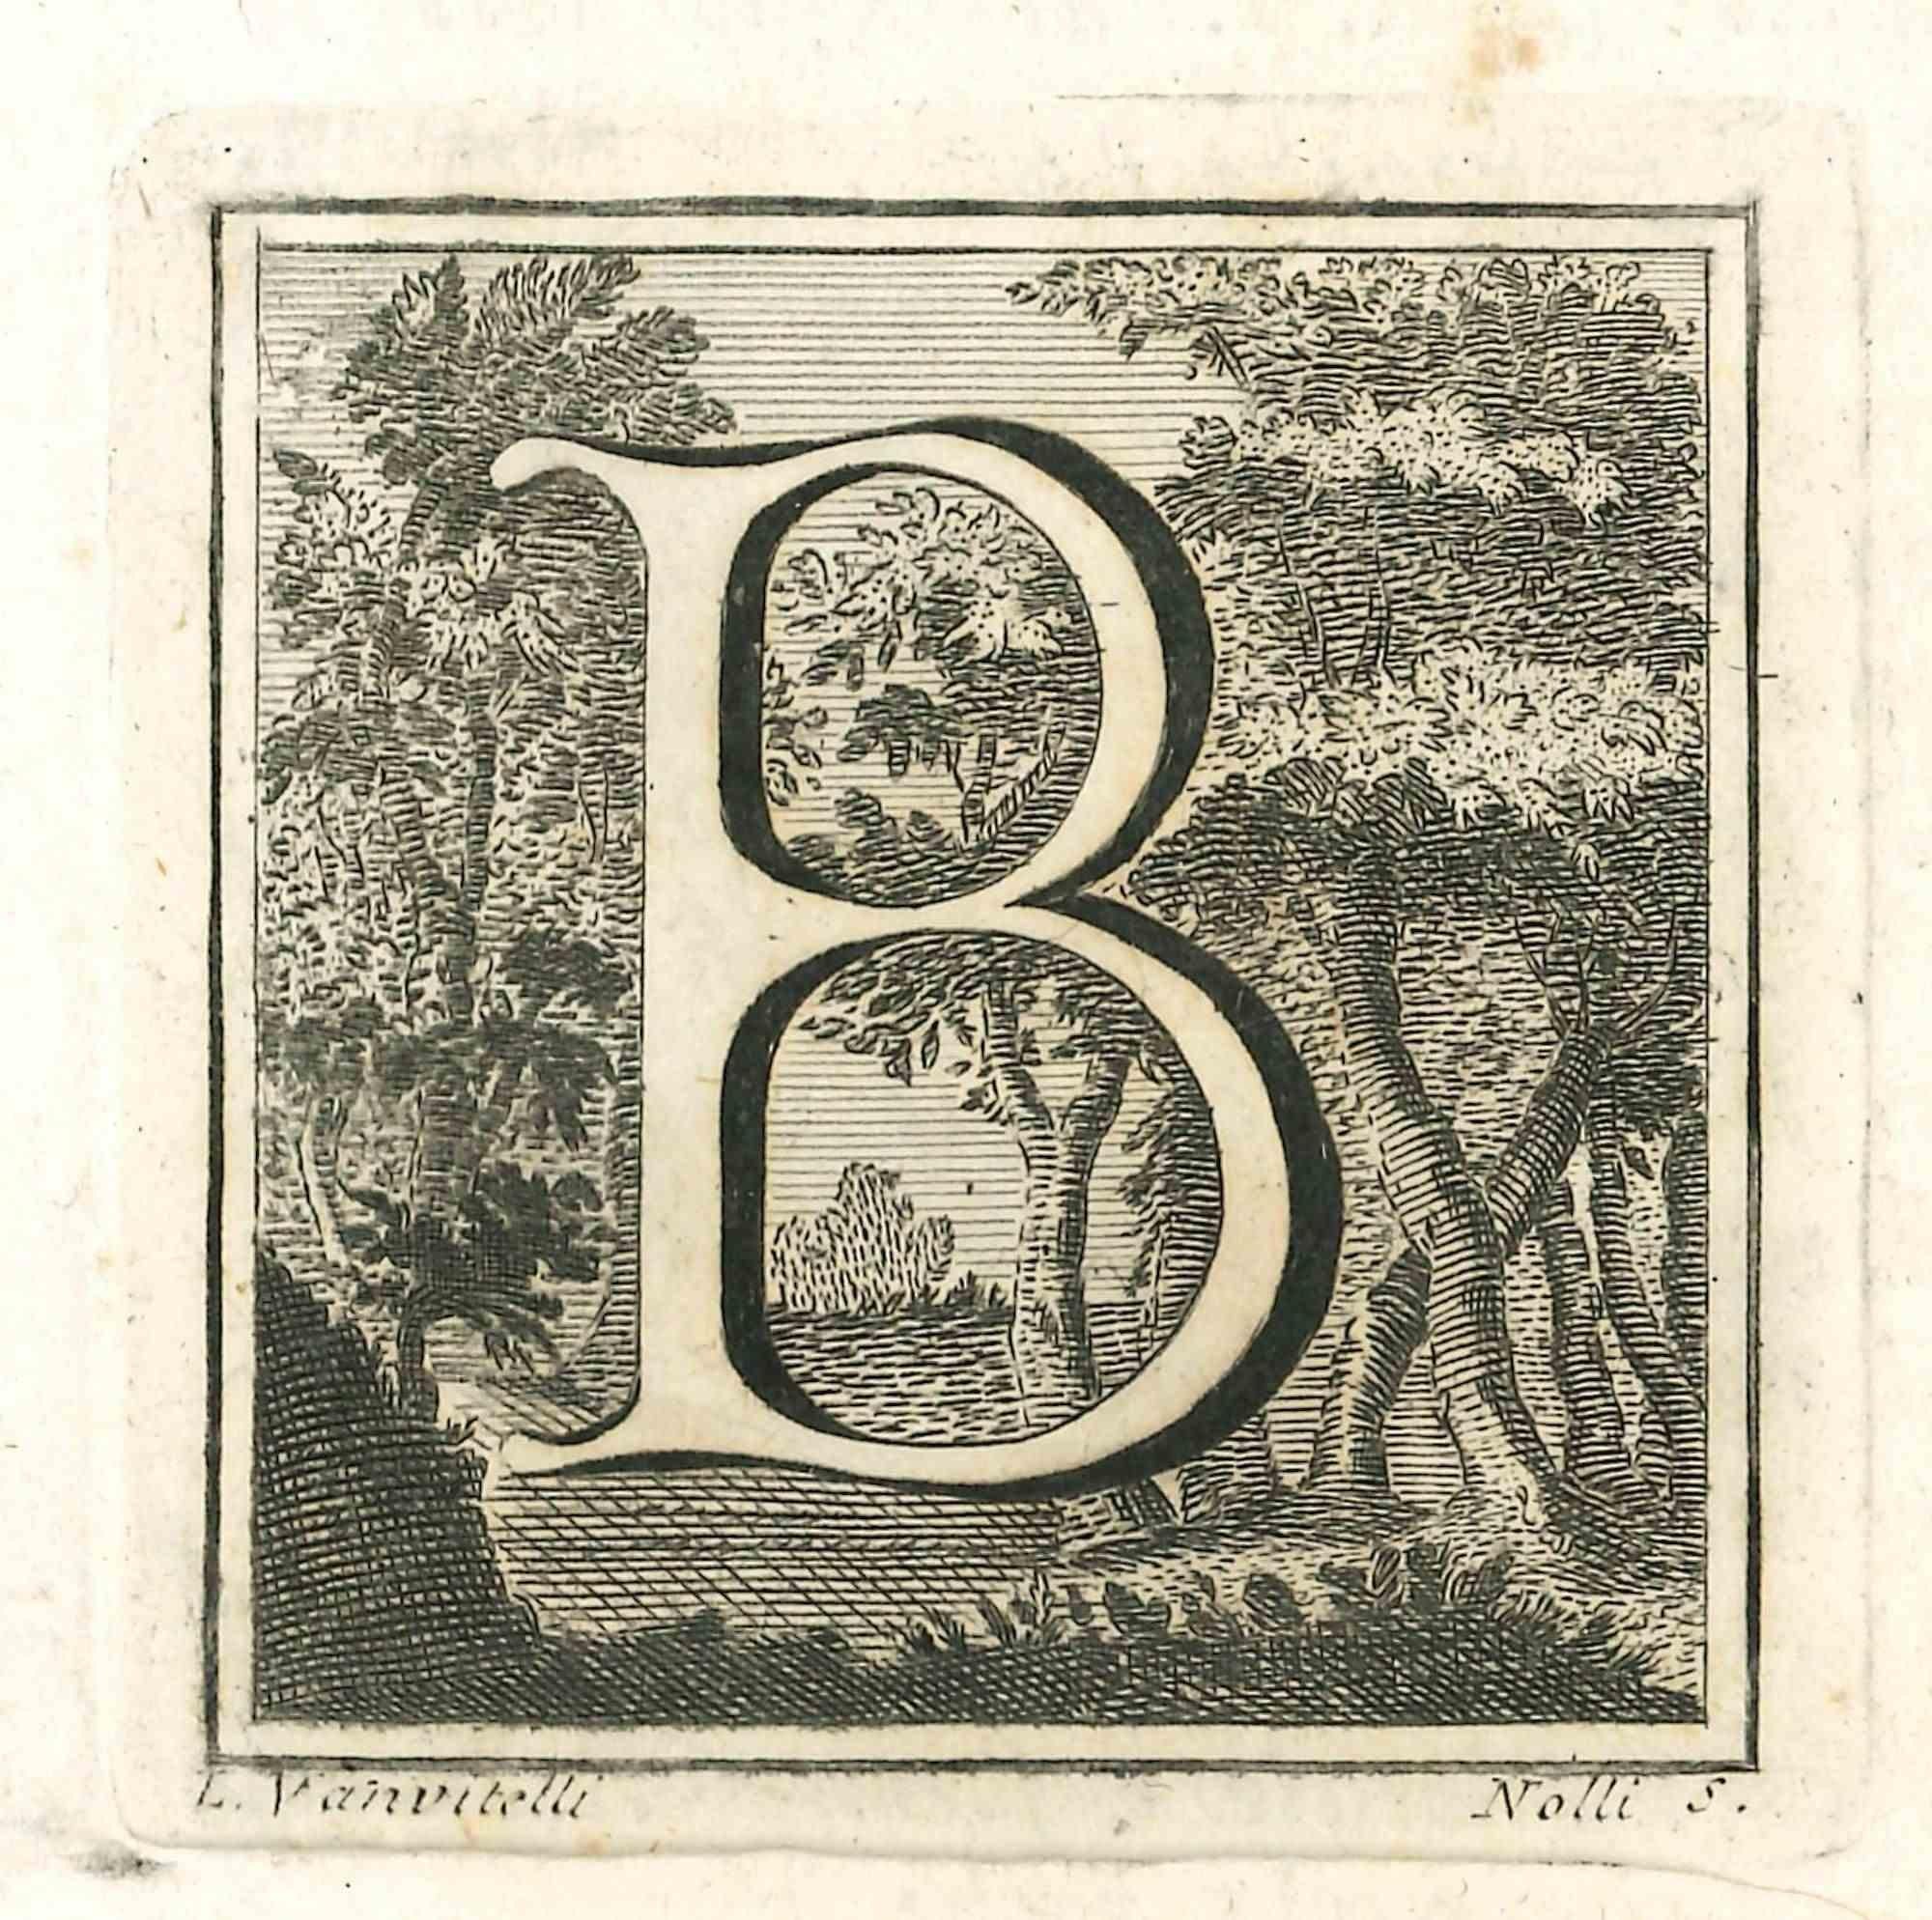 Lettre de l'alphabet B, de la série "Antiquités d'Herculanum", est une gravure sur papier réalisée par Luigi Vanvitelli au XVIIIe siècle.

Bon état avec de légers plis.

La gravure appartient à la suite d'estampes "Antiquités d'Herculanum exposées"